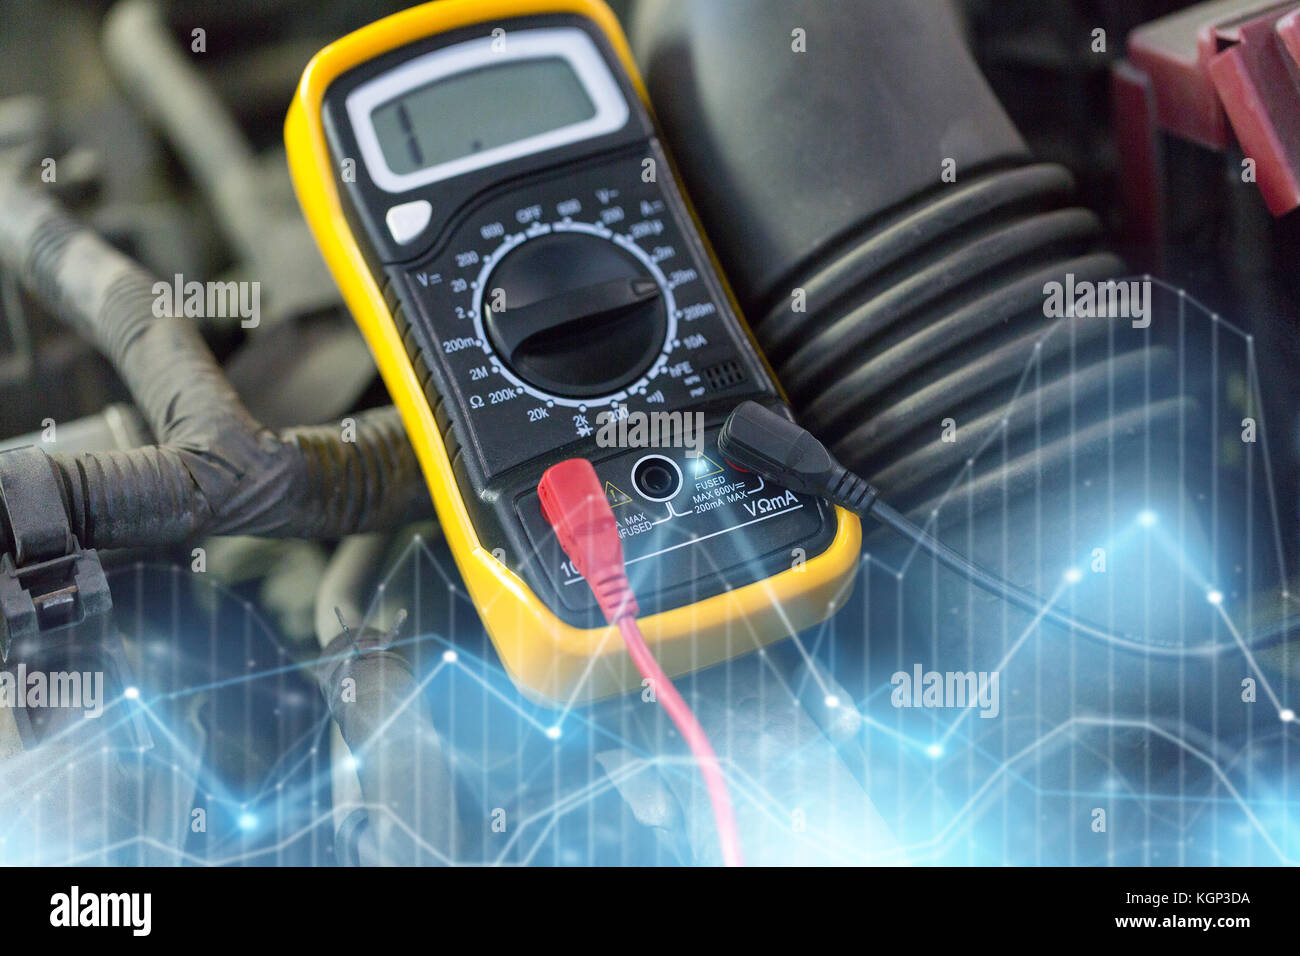 multimeter or voltmeter testing car battery Stock Photo